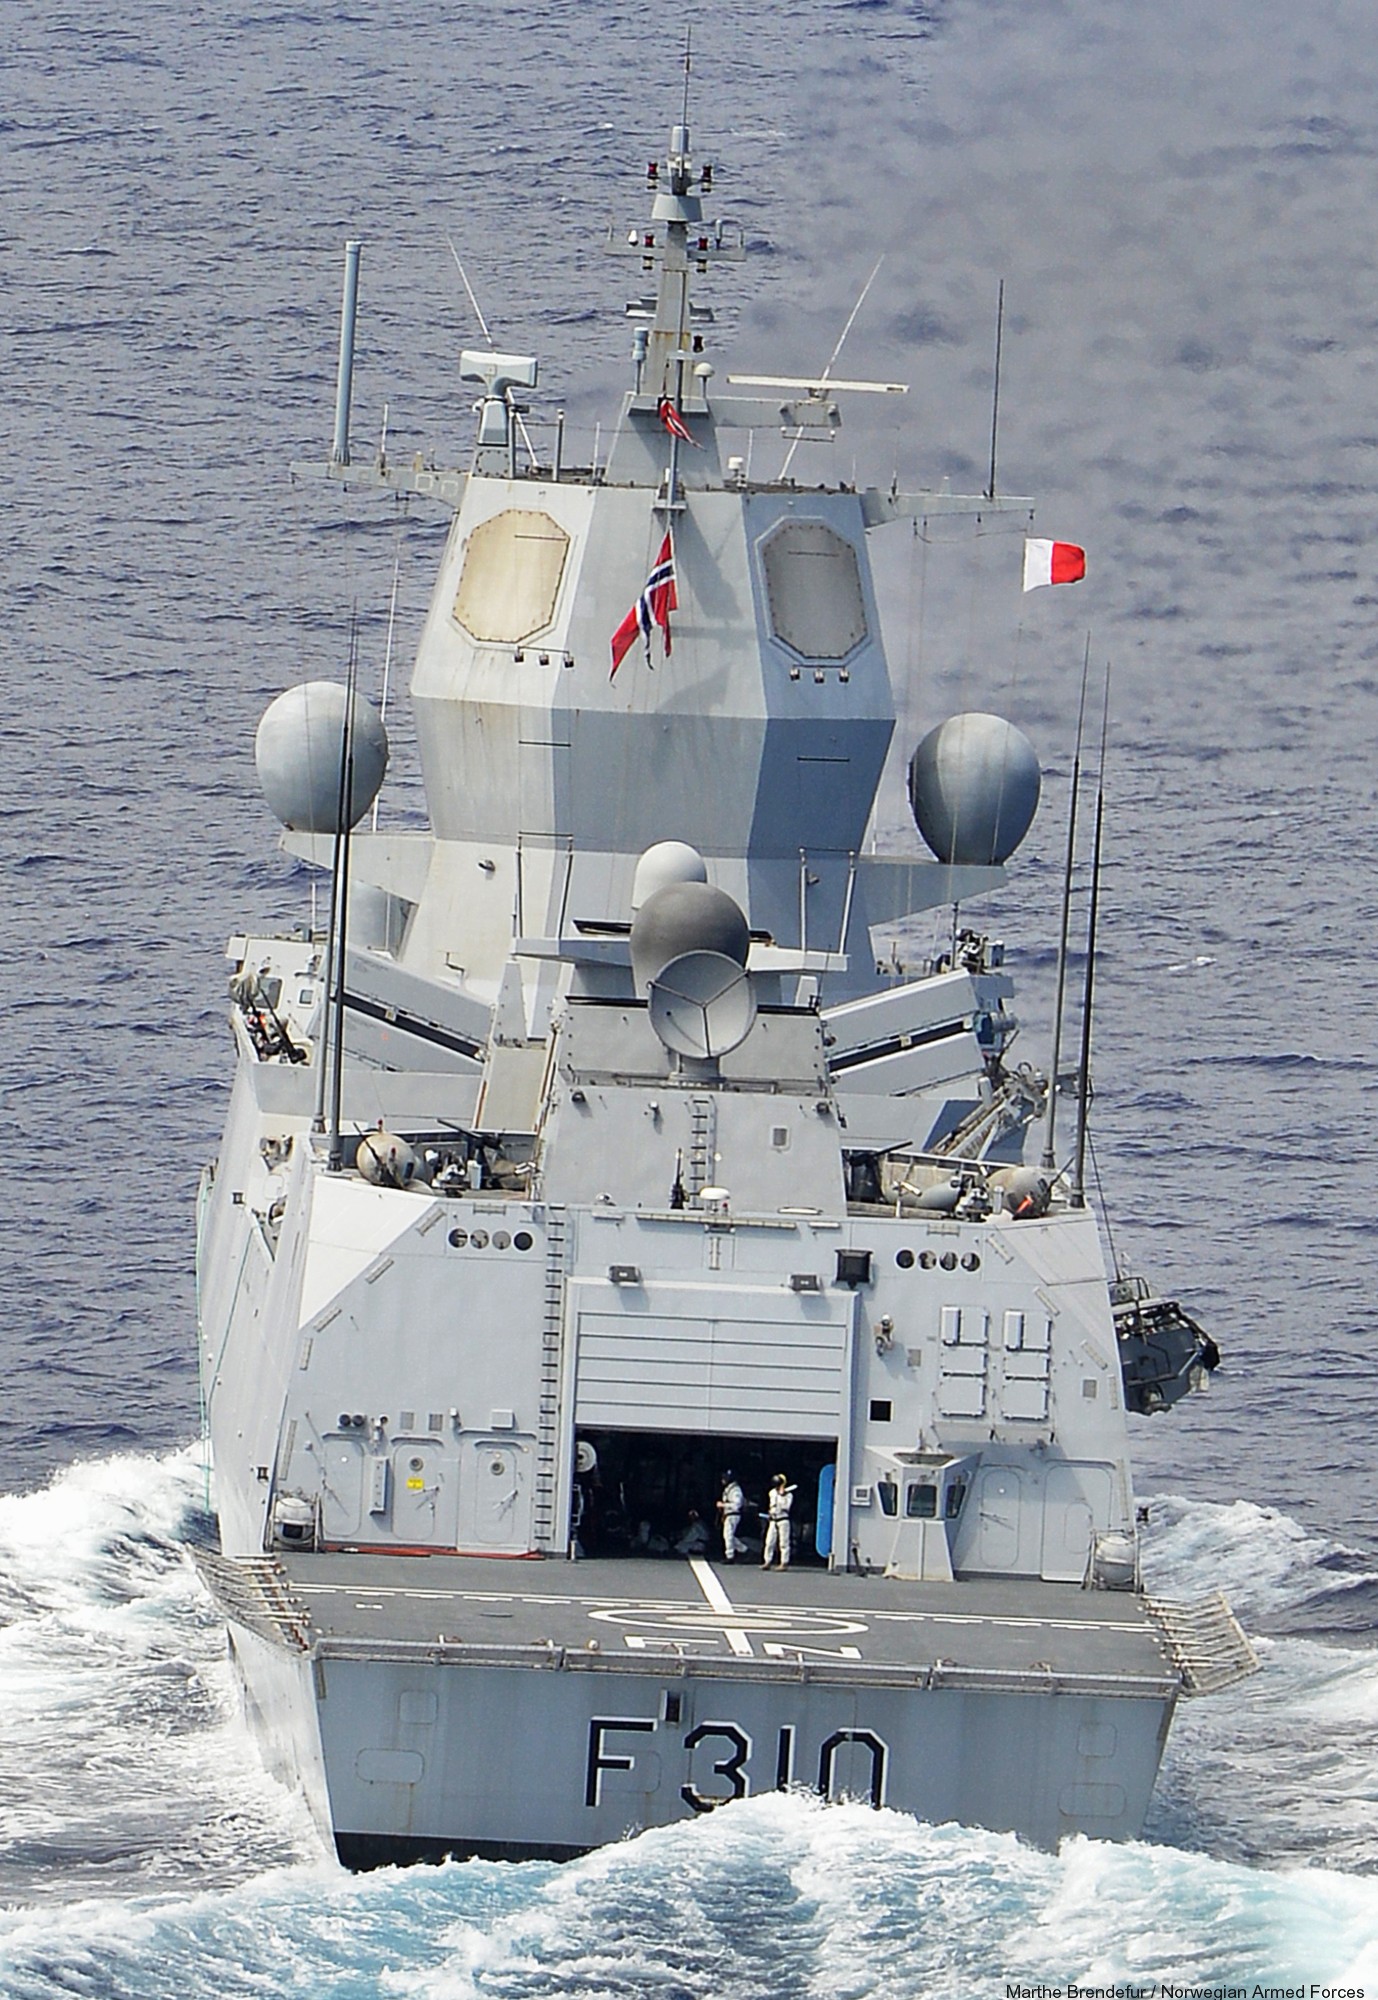 f-310 fridtjof nansen hnoms knm frigate royal norwegian navy sjoforsvaret 20